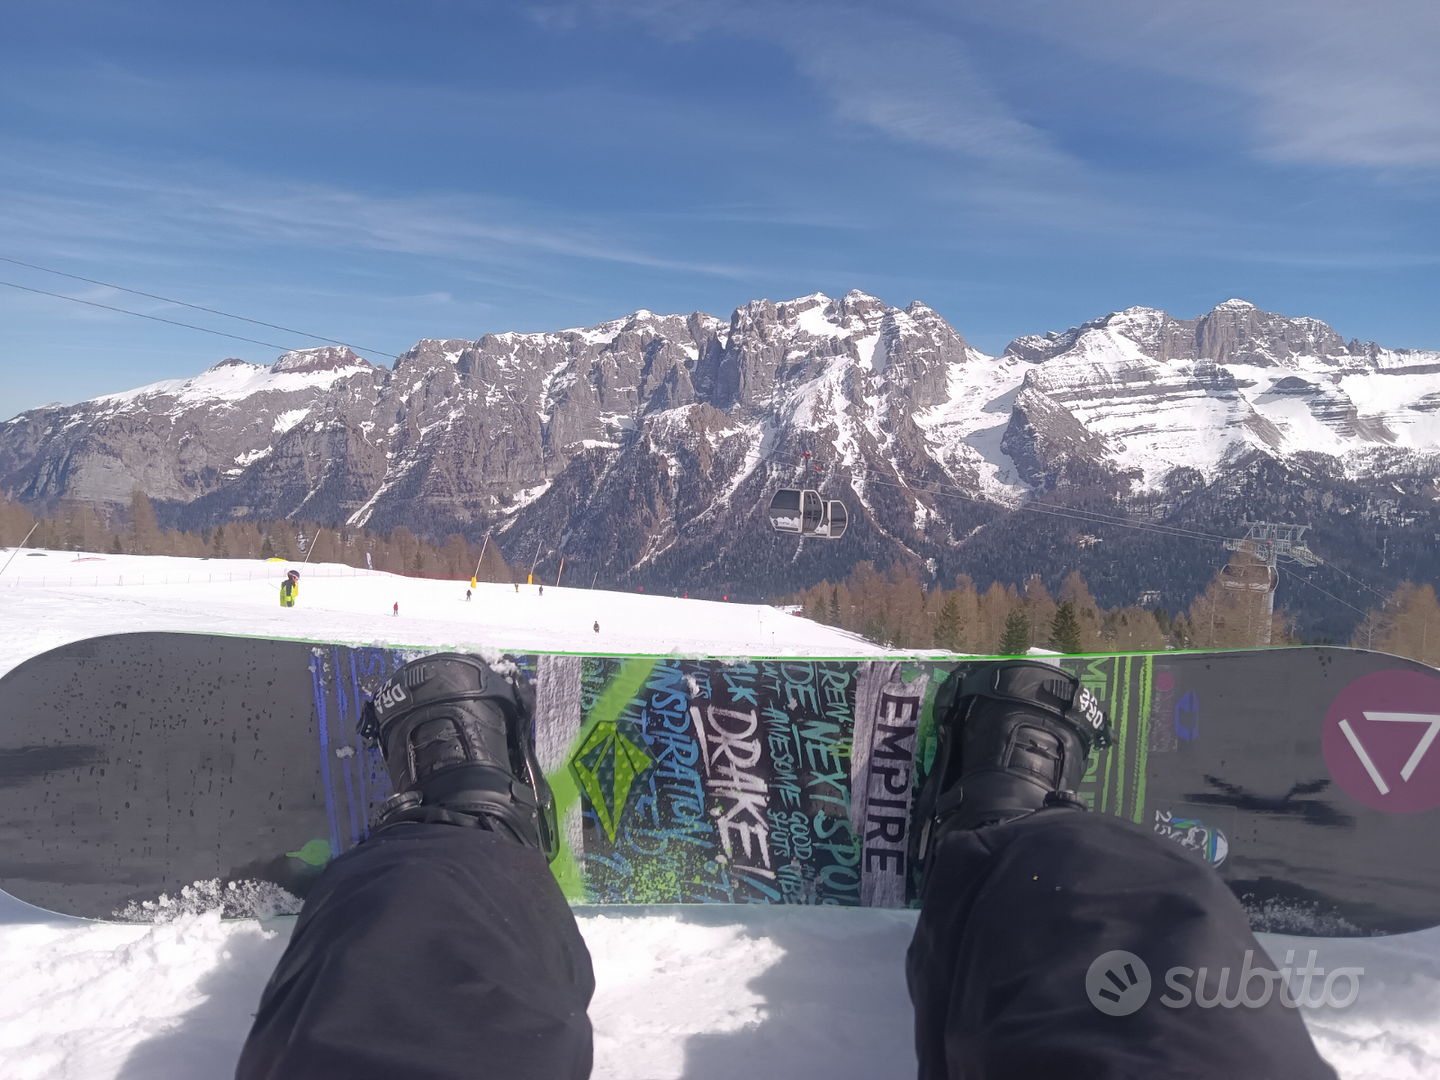 Snowboard Drake empire 158 - Sports In a Brescia